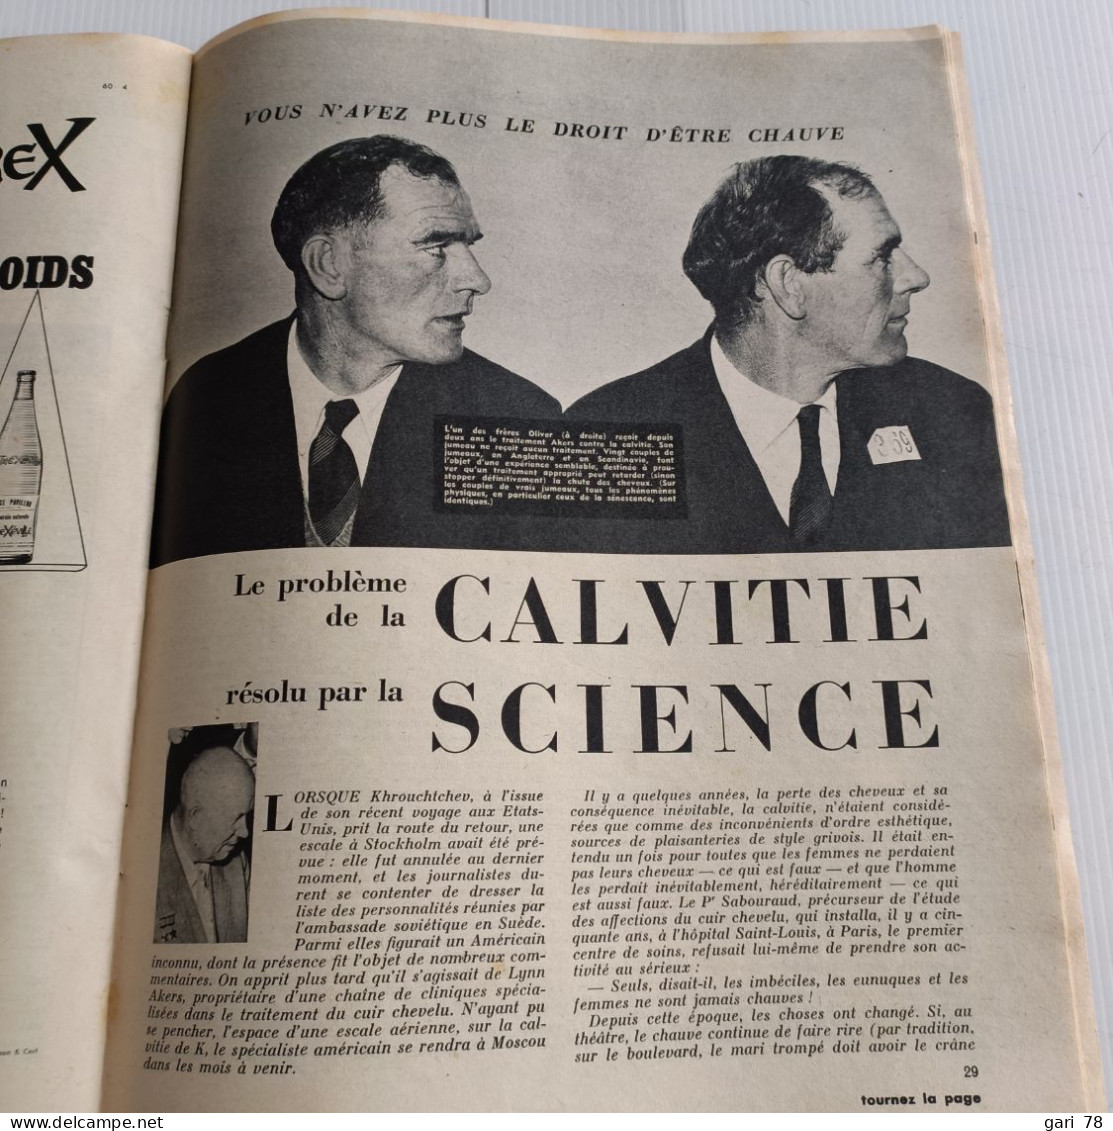 Magazine Mensuel, VOTRE SANTE N° 251 (date De 1960) Foie - Frigidité - Sclérose En Plaques - Médecine & Santé